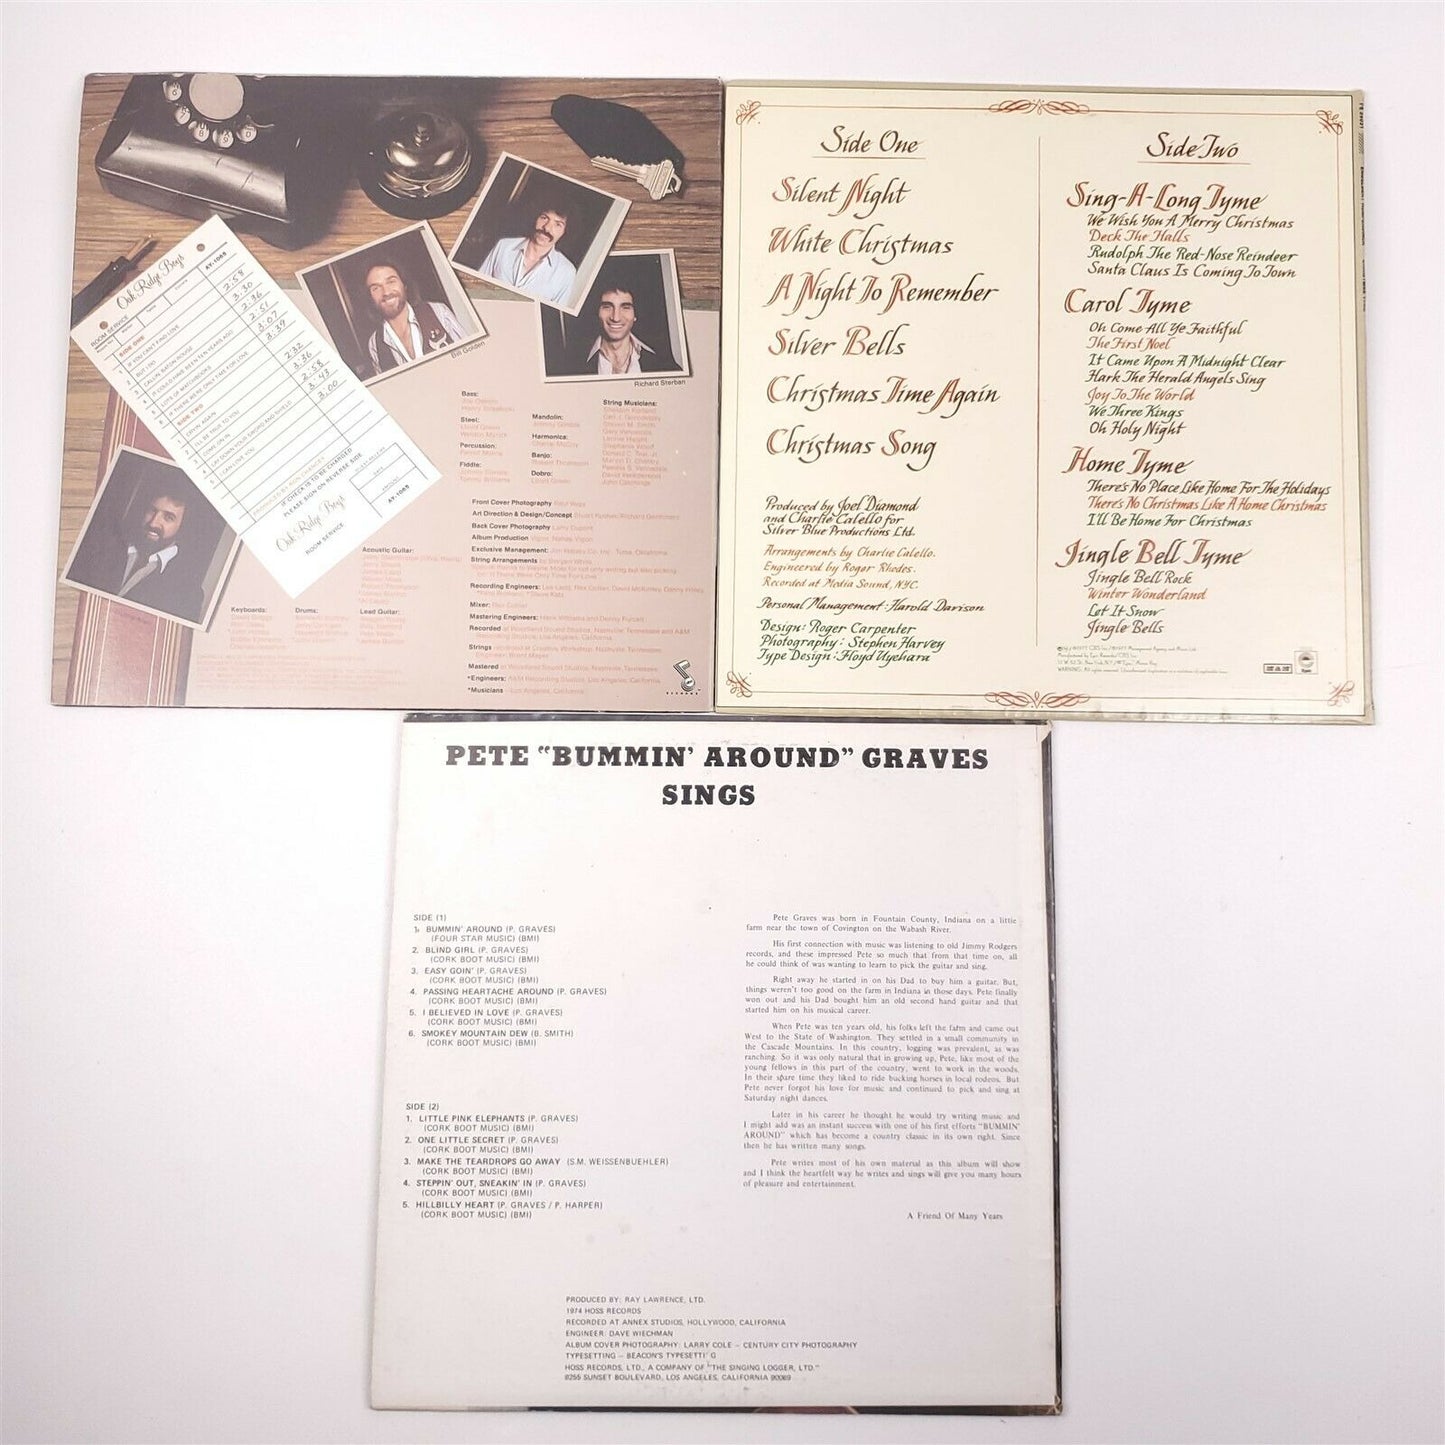 Country Western Bluegrass 1970's 9 Records Hank Locklin, Oak Ridge Boys